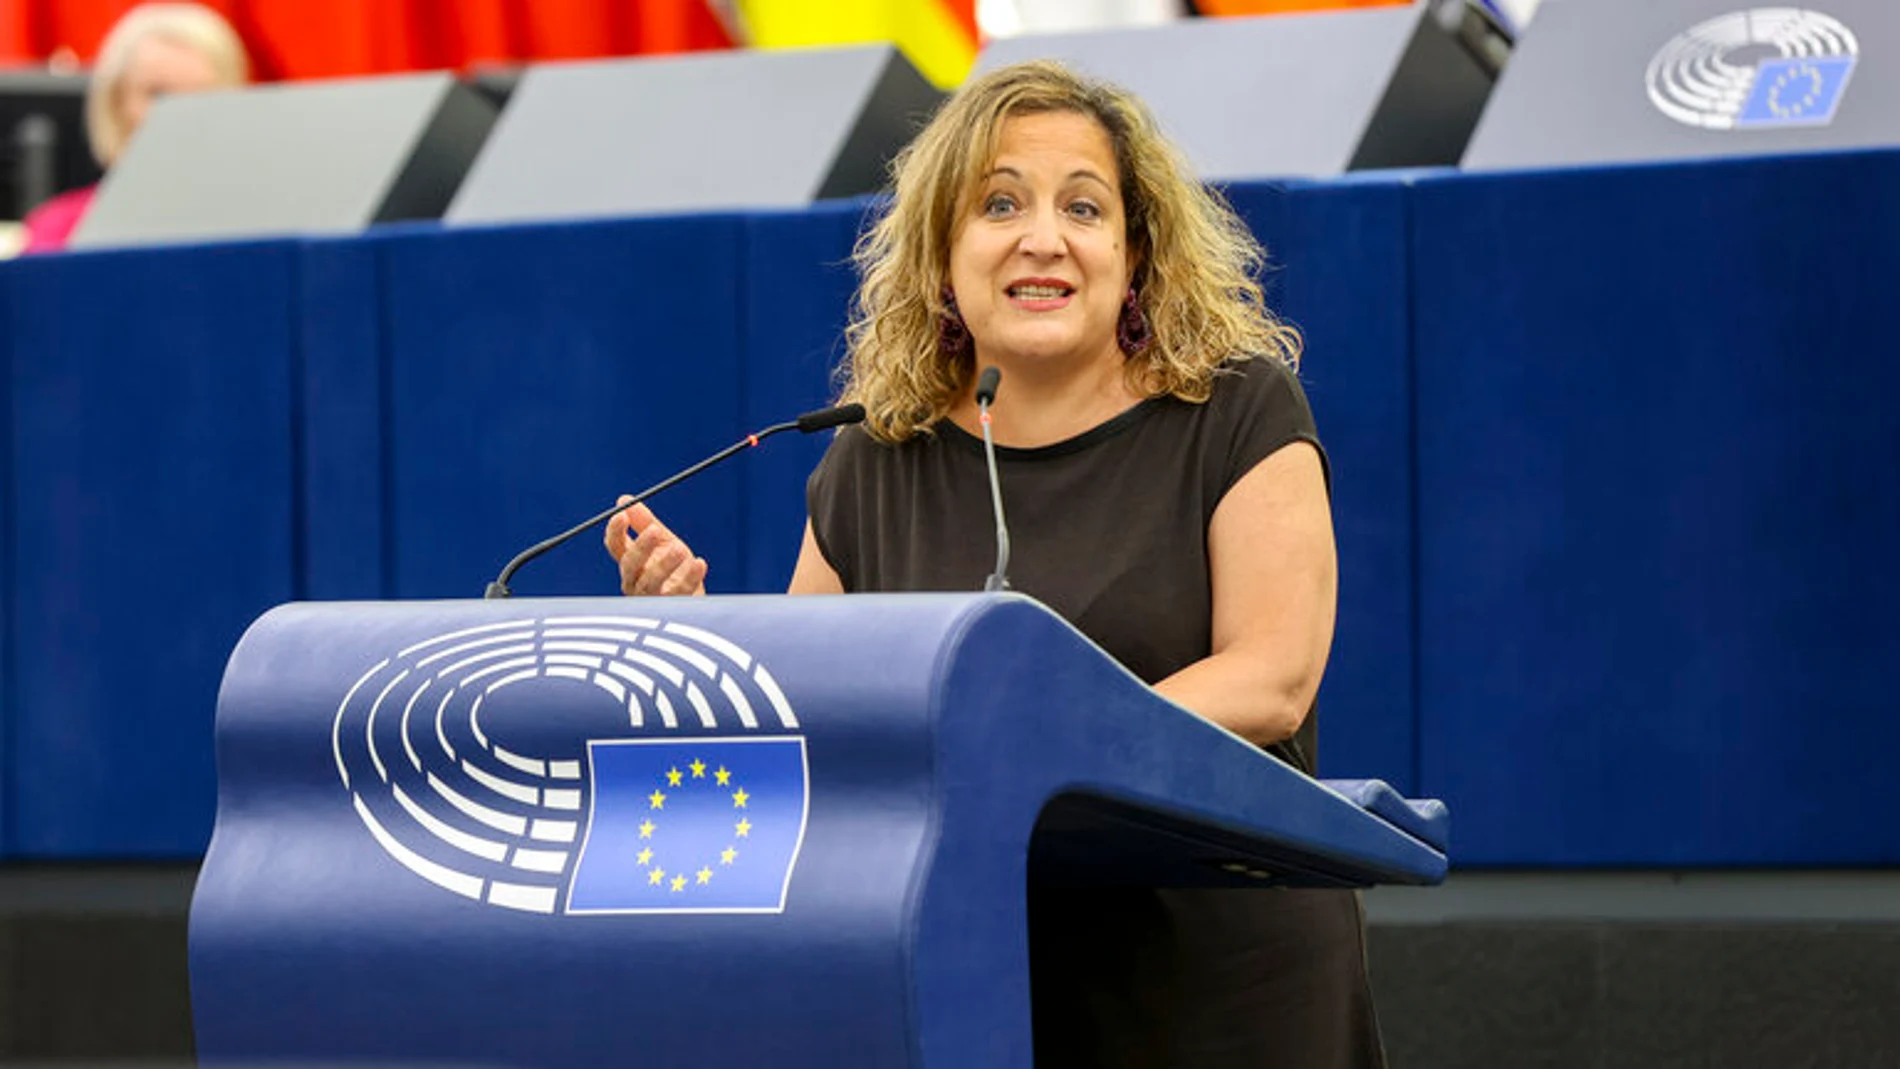 Iratxe García, presidenta de los socialistas europeos, interviene en la Eurocámara